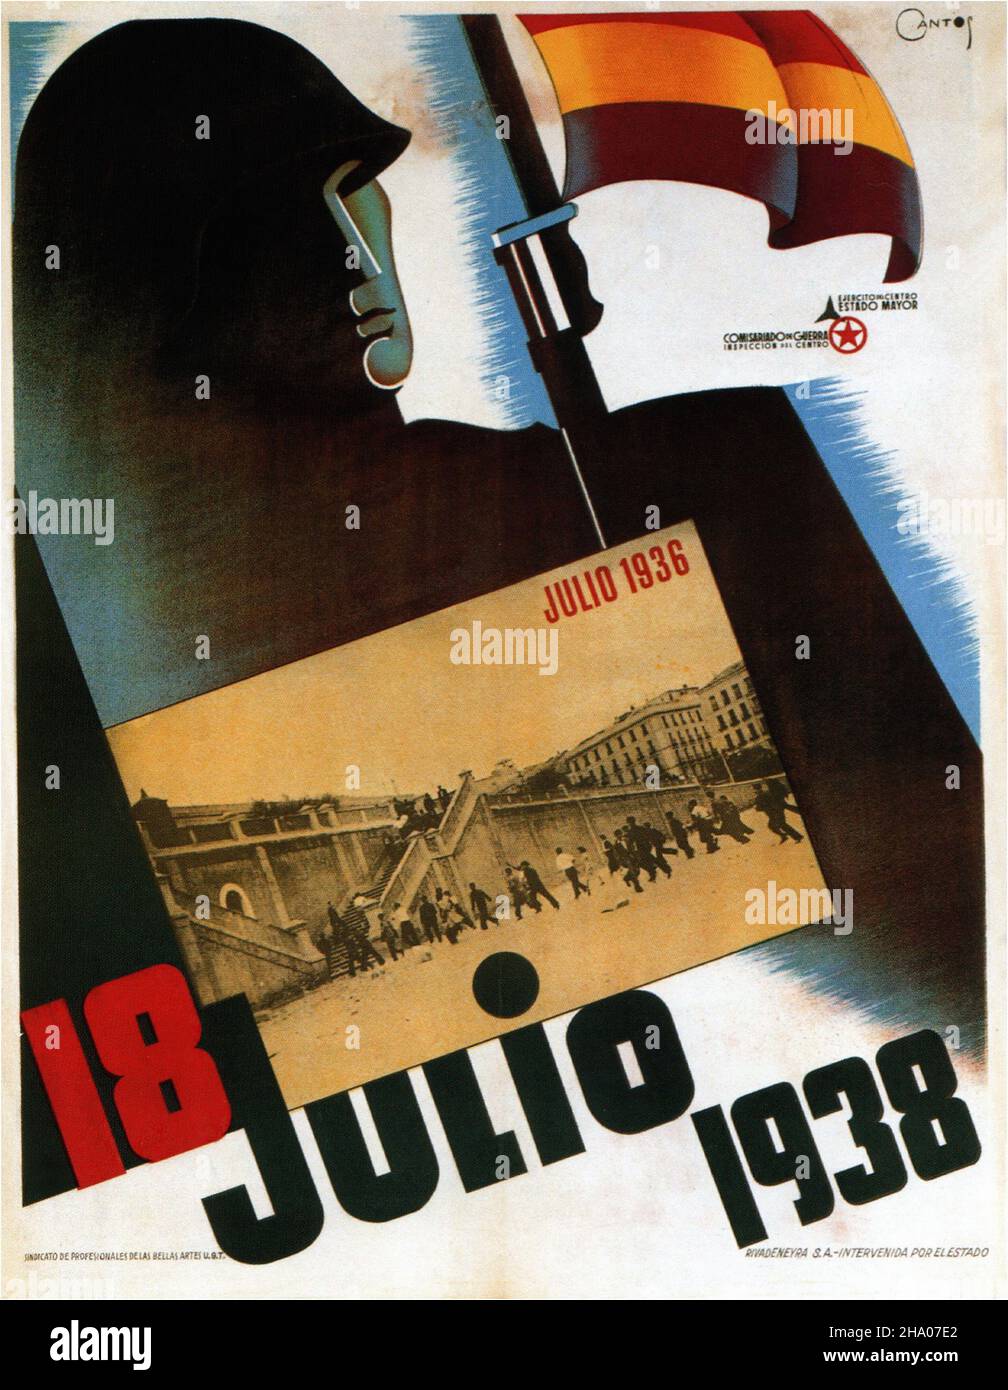 1938 18 Julio 1938 - affiche de propagande sur la guerre civile espagnole (Guerra civil Española) Banque D'Images